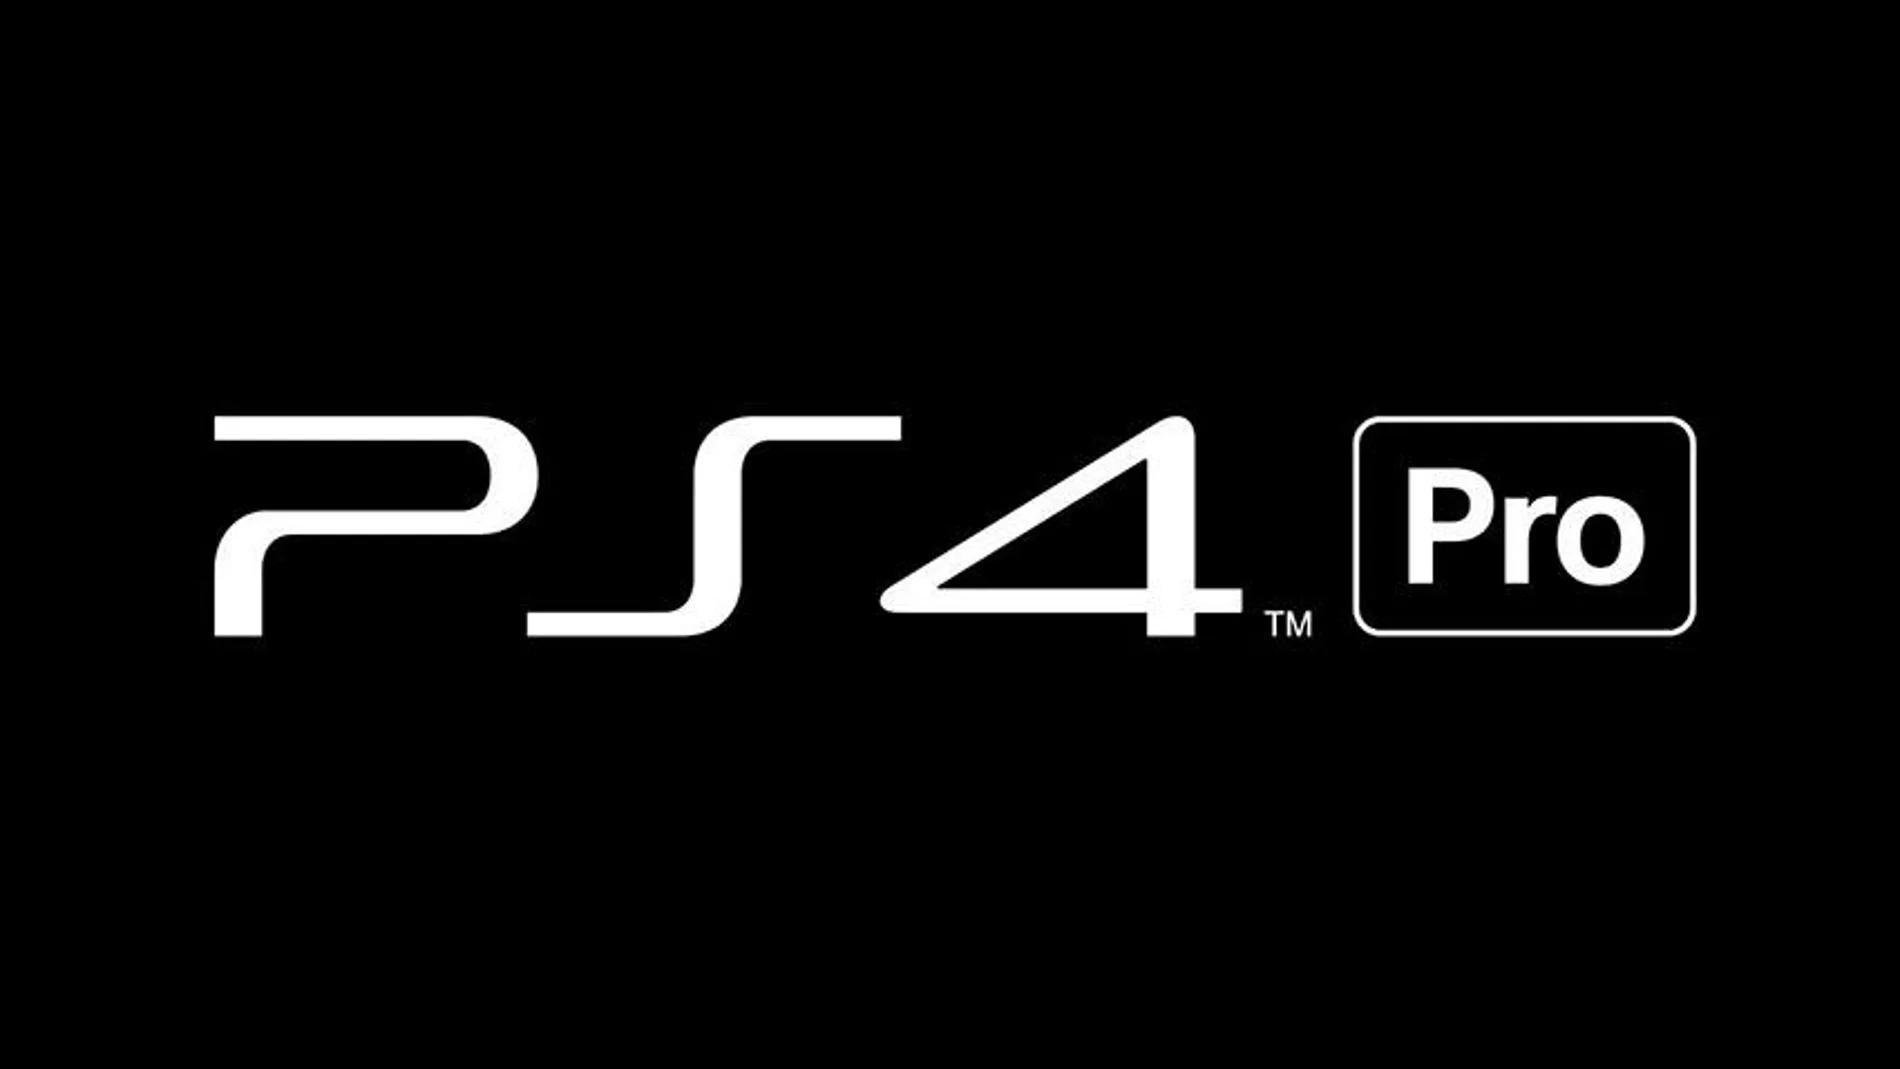 Te contamos las principales características de PlayStation 4 Pro y cómo transferir los datos